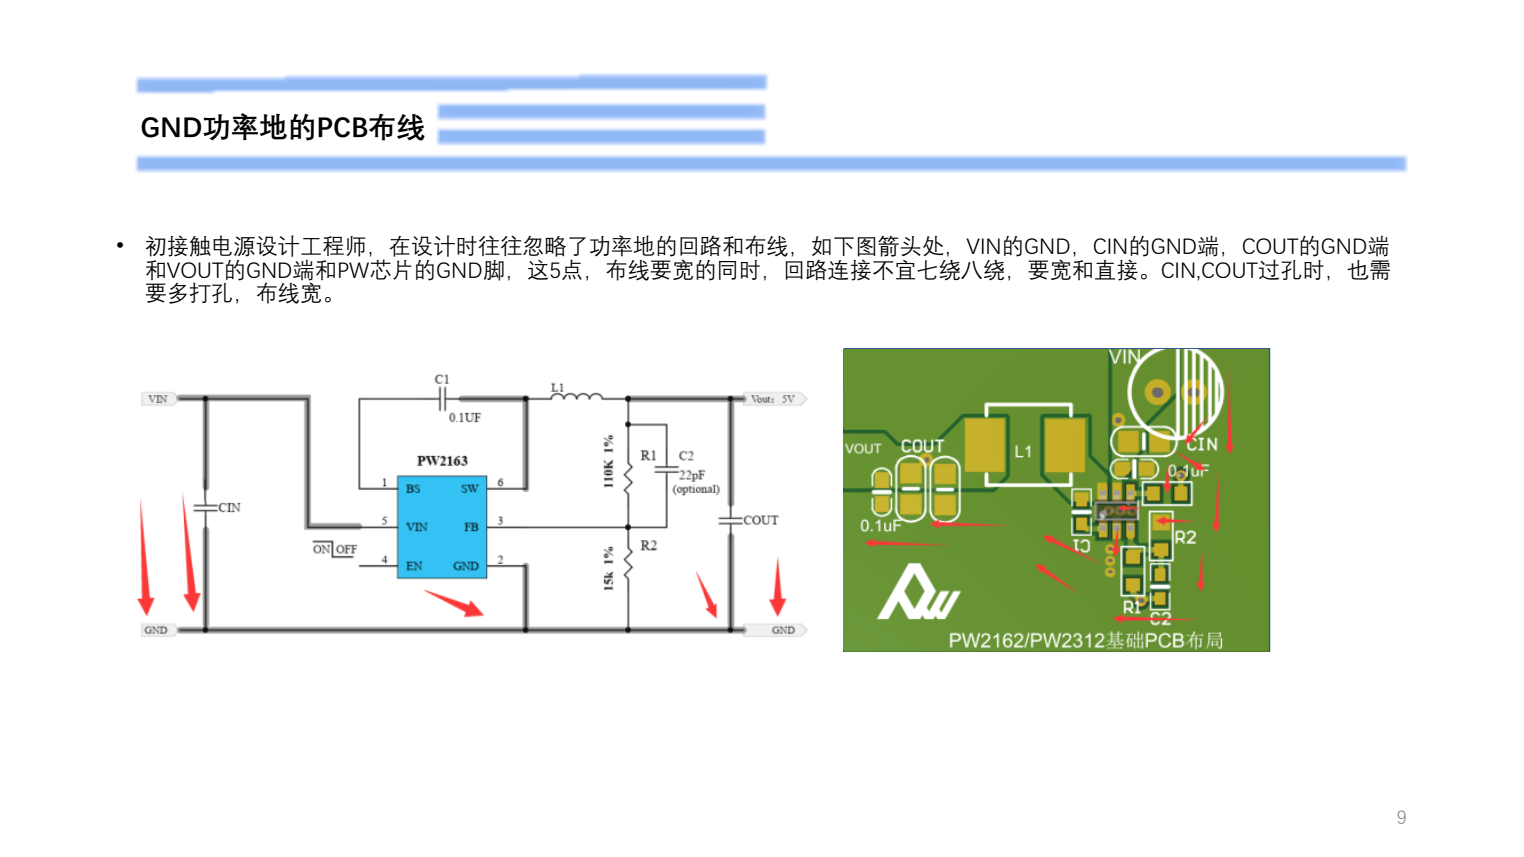 9V降压5V,最大3A供电的PCB设计过程截图PW2163